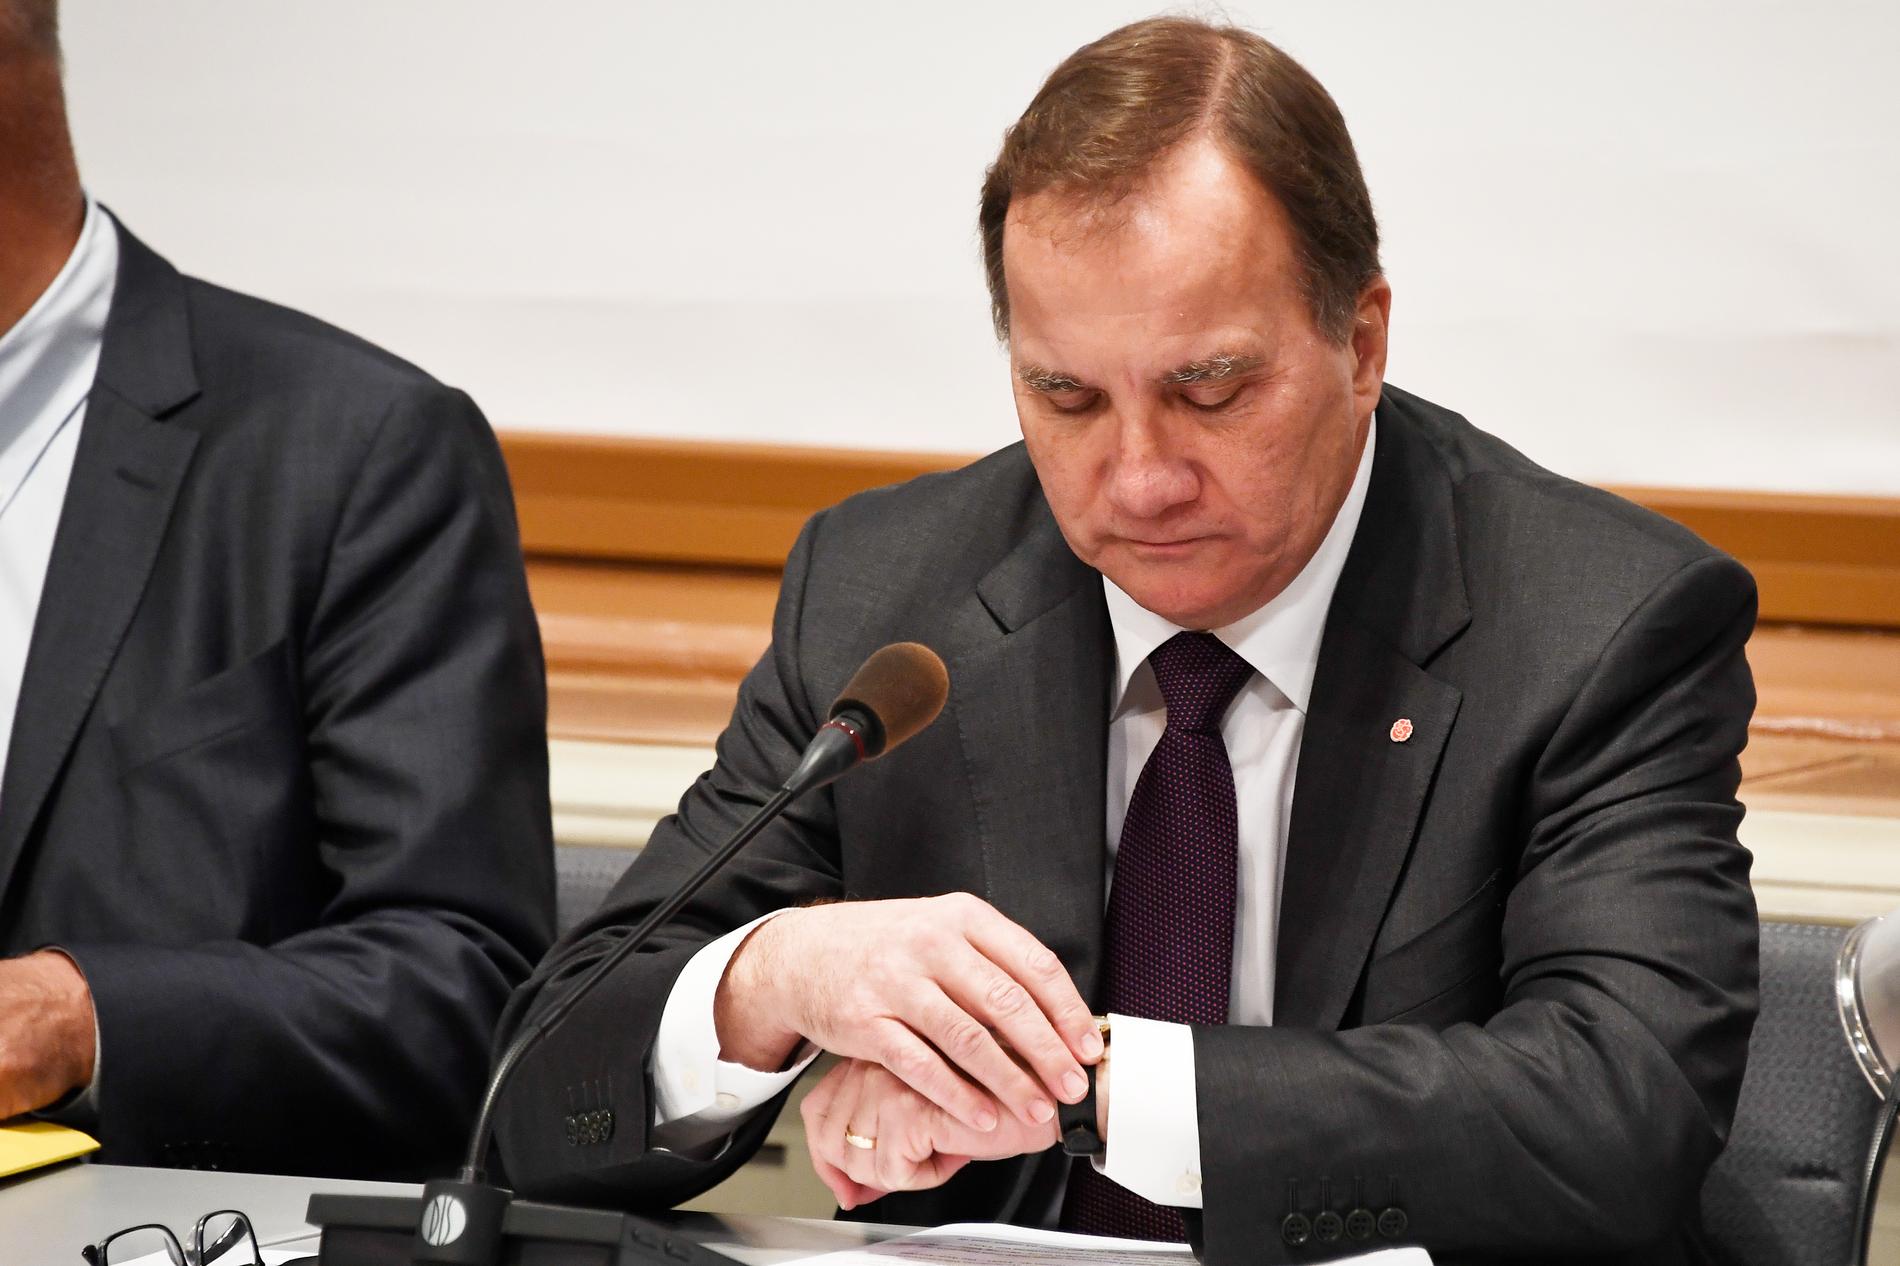 Statsminister Stefan Löfven under dagens möte med EU-nämnden.